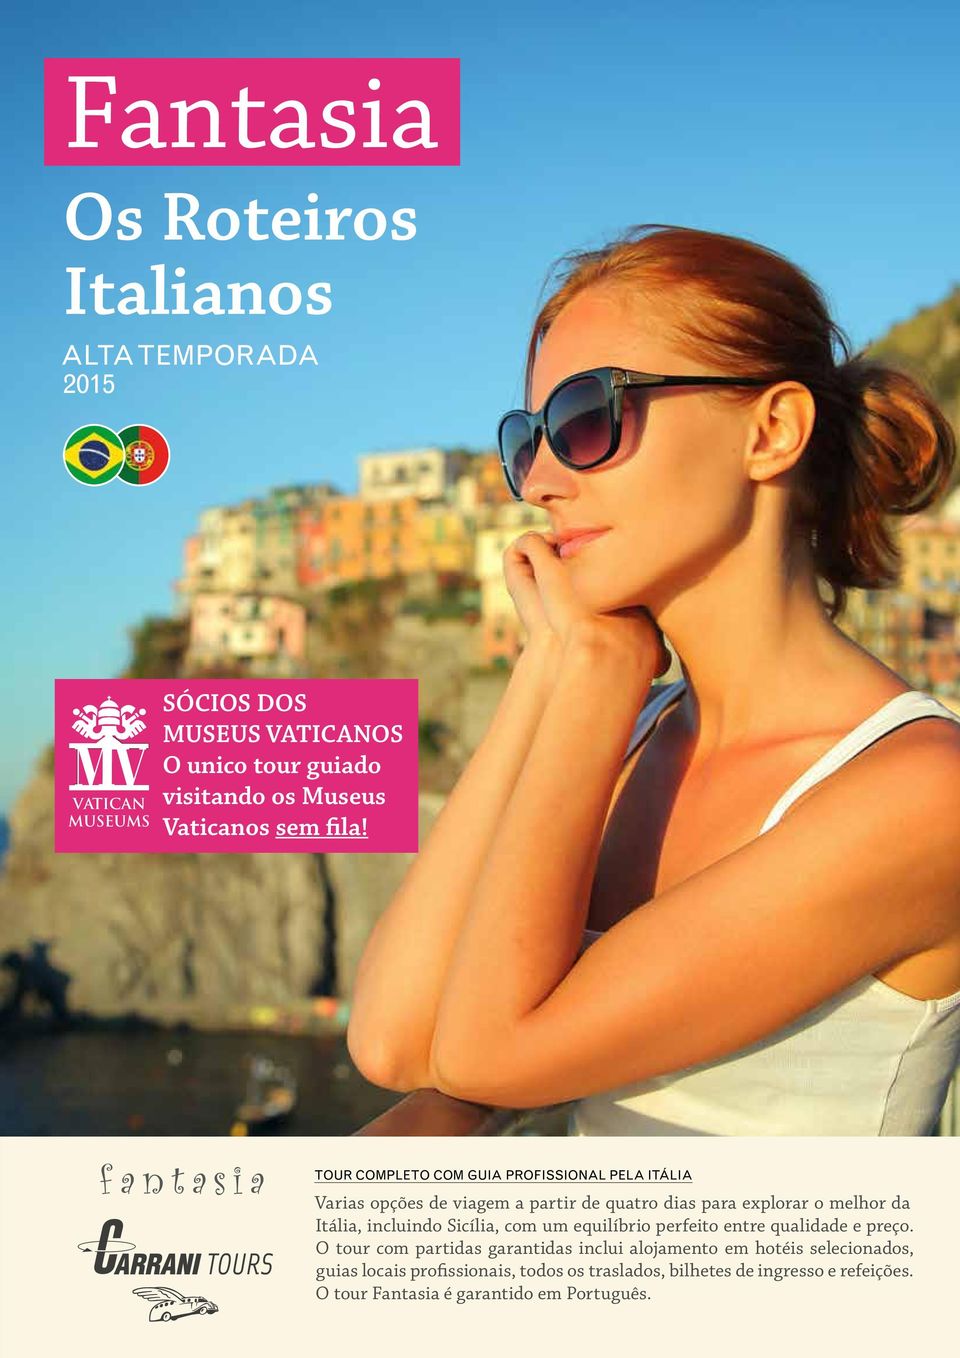 TOUR COMPLETO COM GUIA PROFISSIONAL PELA ITÁLIA Varias opções de viagem a partir de quatro dias para explorar o melhor da Itália,